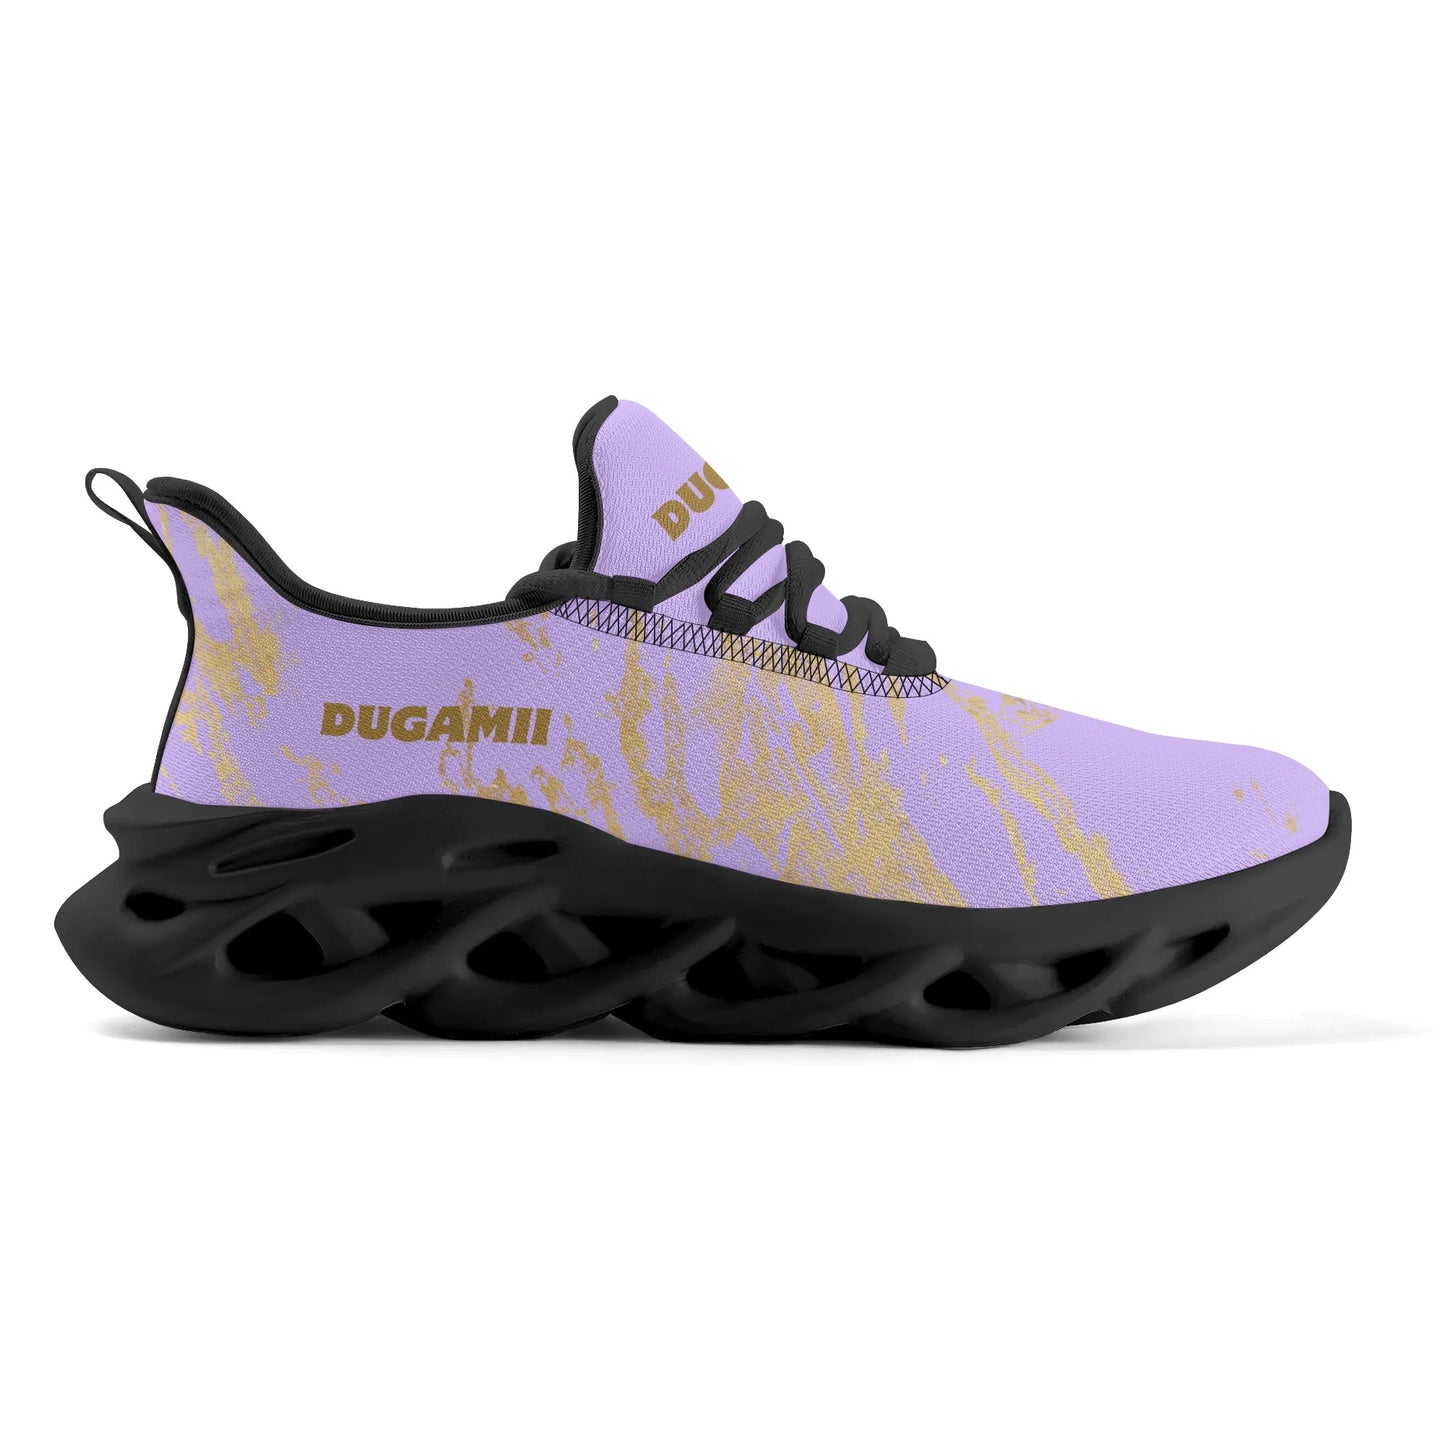 Womens DuGamii Lavender Premium M-sole Sneakers